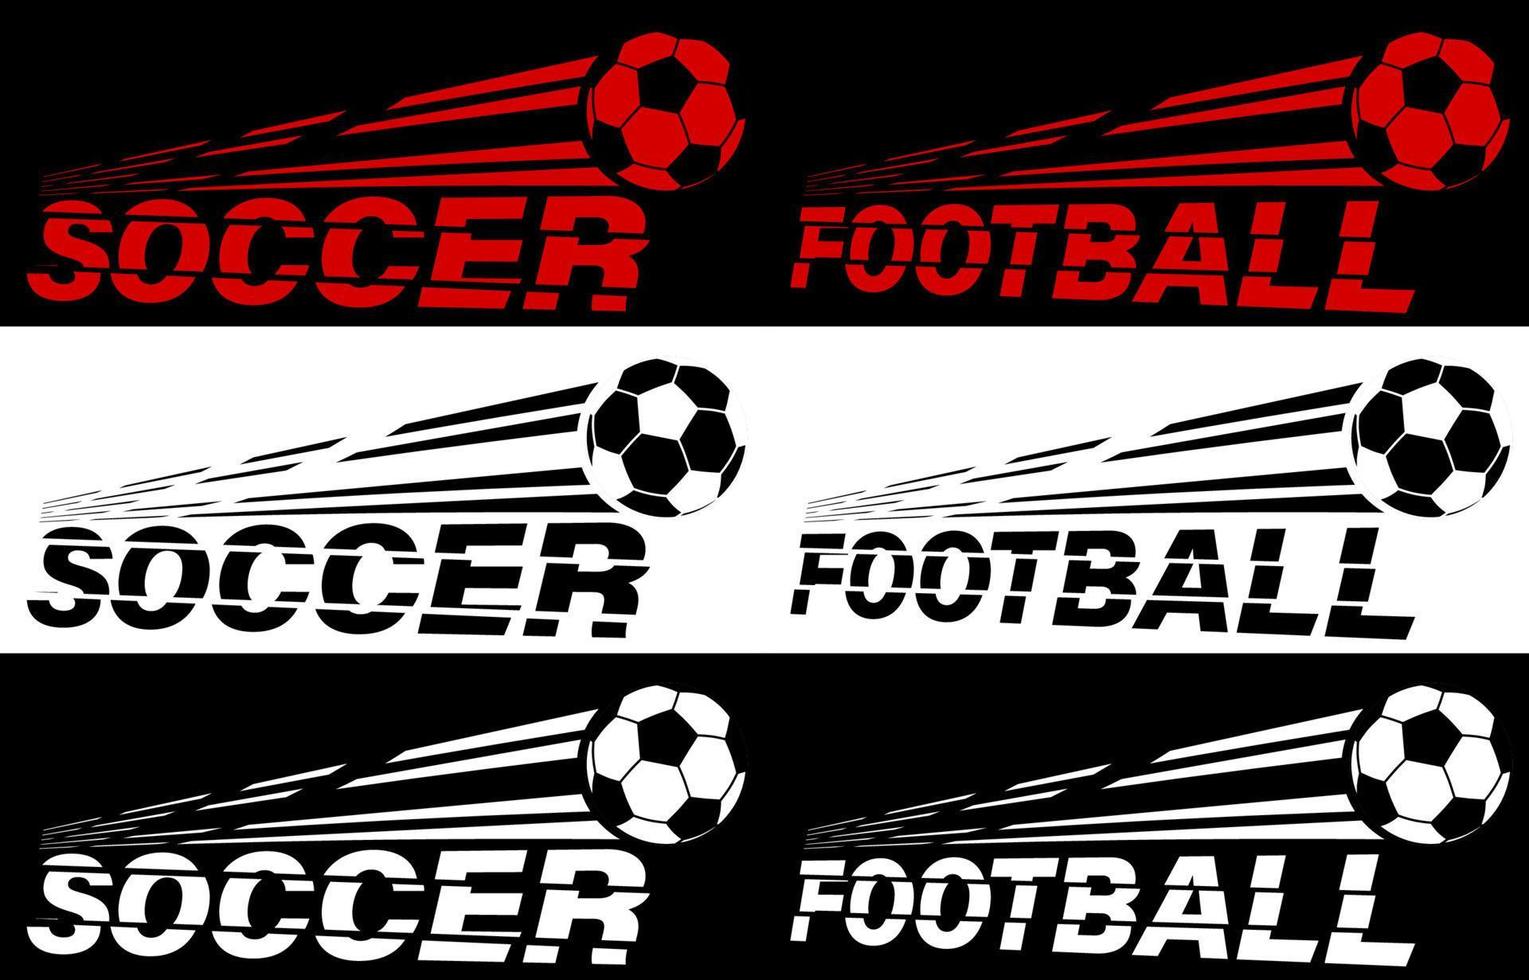 voetbal, Amerikaans voetbal belettering gebroken door vliegend voetbal bal. sport apparatuur. actief levensstijl. vector